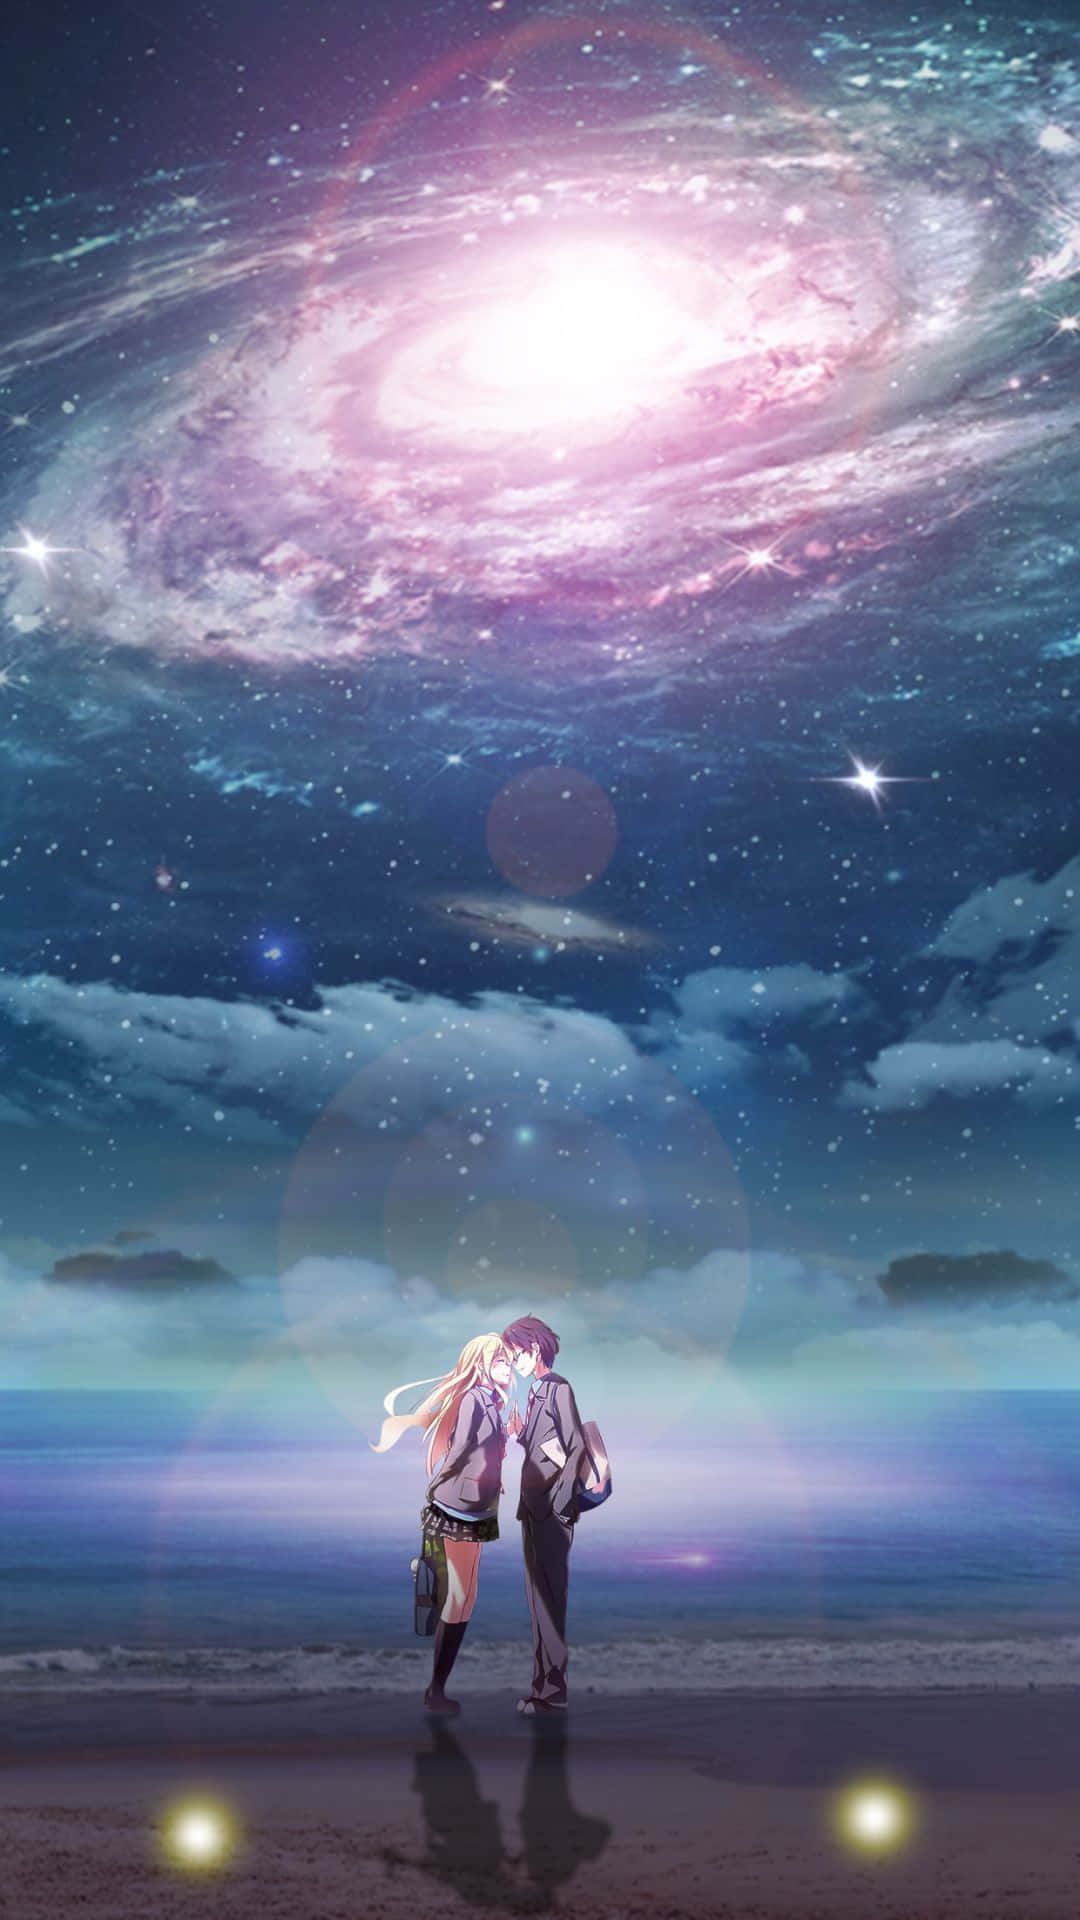 Letue Bugie In Aprile - Immagini Per Iphone Di Kōsei E Kaori Nella Nebulosa. Sfondo